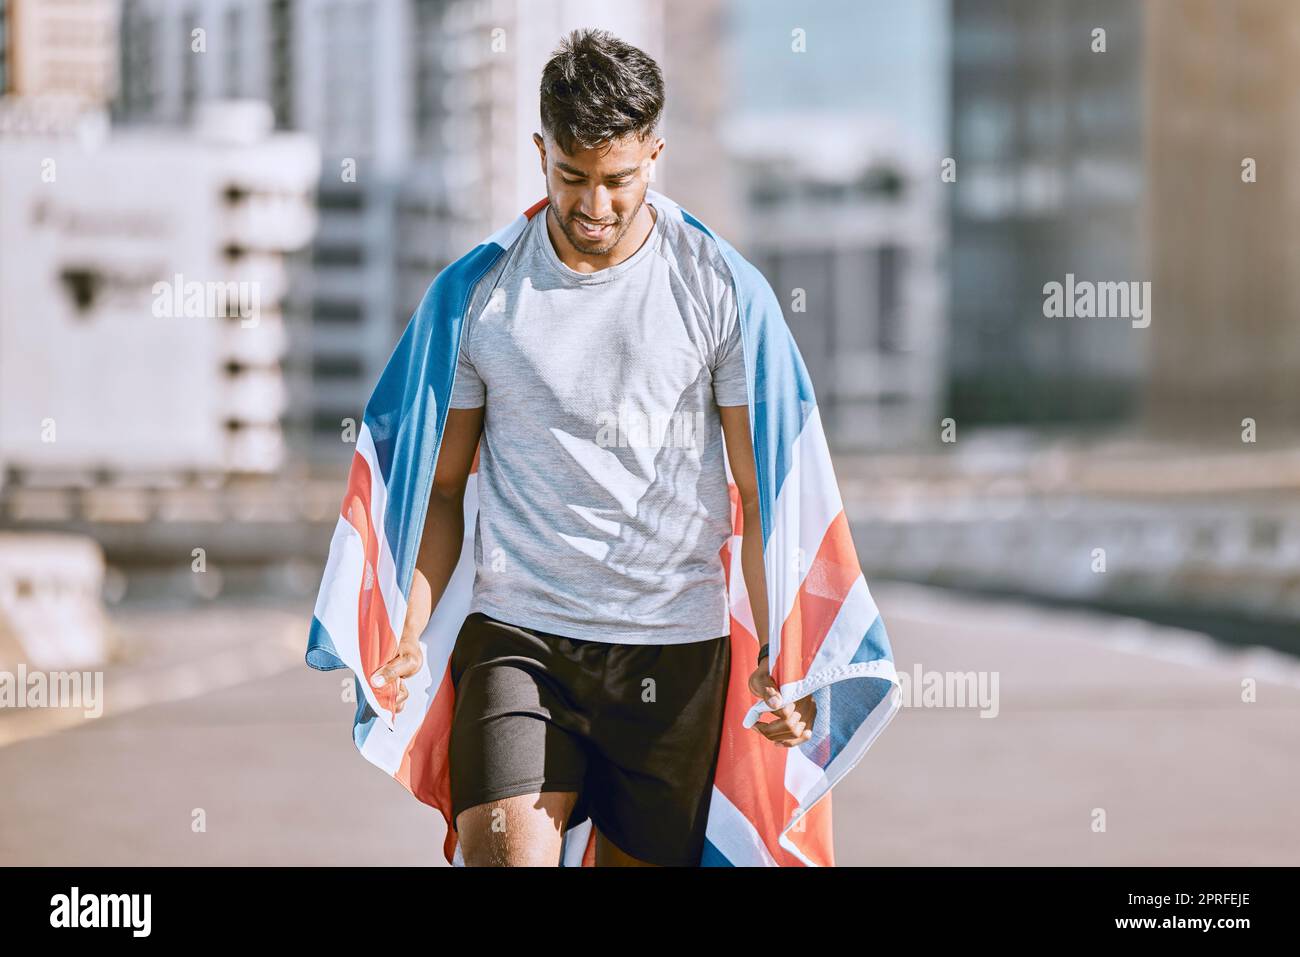 Fitness, entraînement et entraînement avec un sportif dans un drapeau britannique qui a couru un marathon dans la ville. Santé, exercice et bien-être avec un athlète olympique ou un coureur s'exerçant pour le cardio et l'endurance Banque D'Images